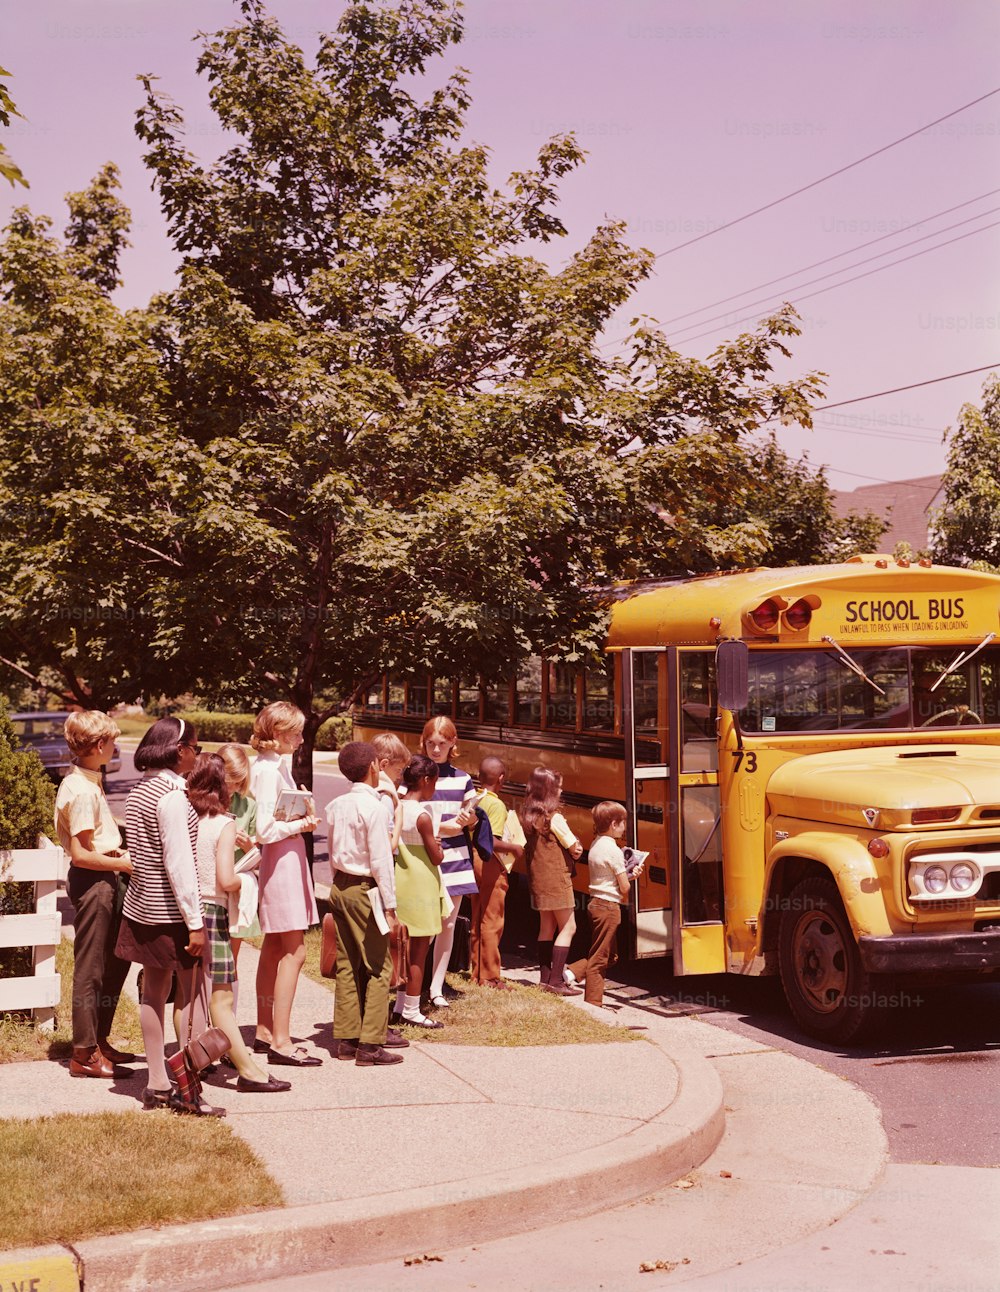 STATI UNITI - 1970 CIRCA: Studenti in fila, in attesa di salire a bordo dello scuolabus.